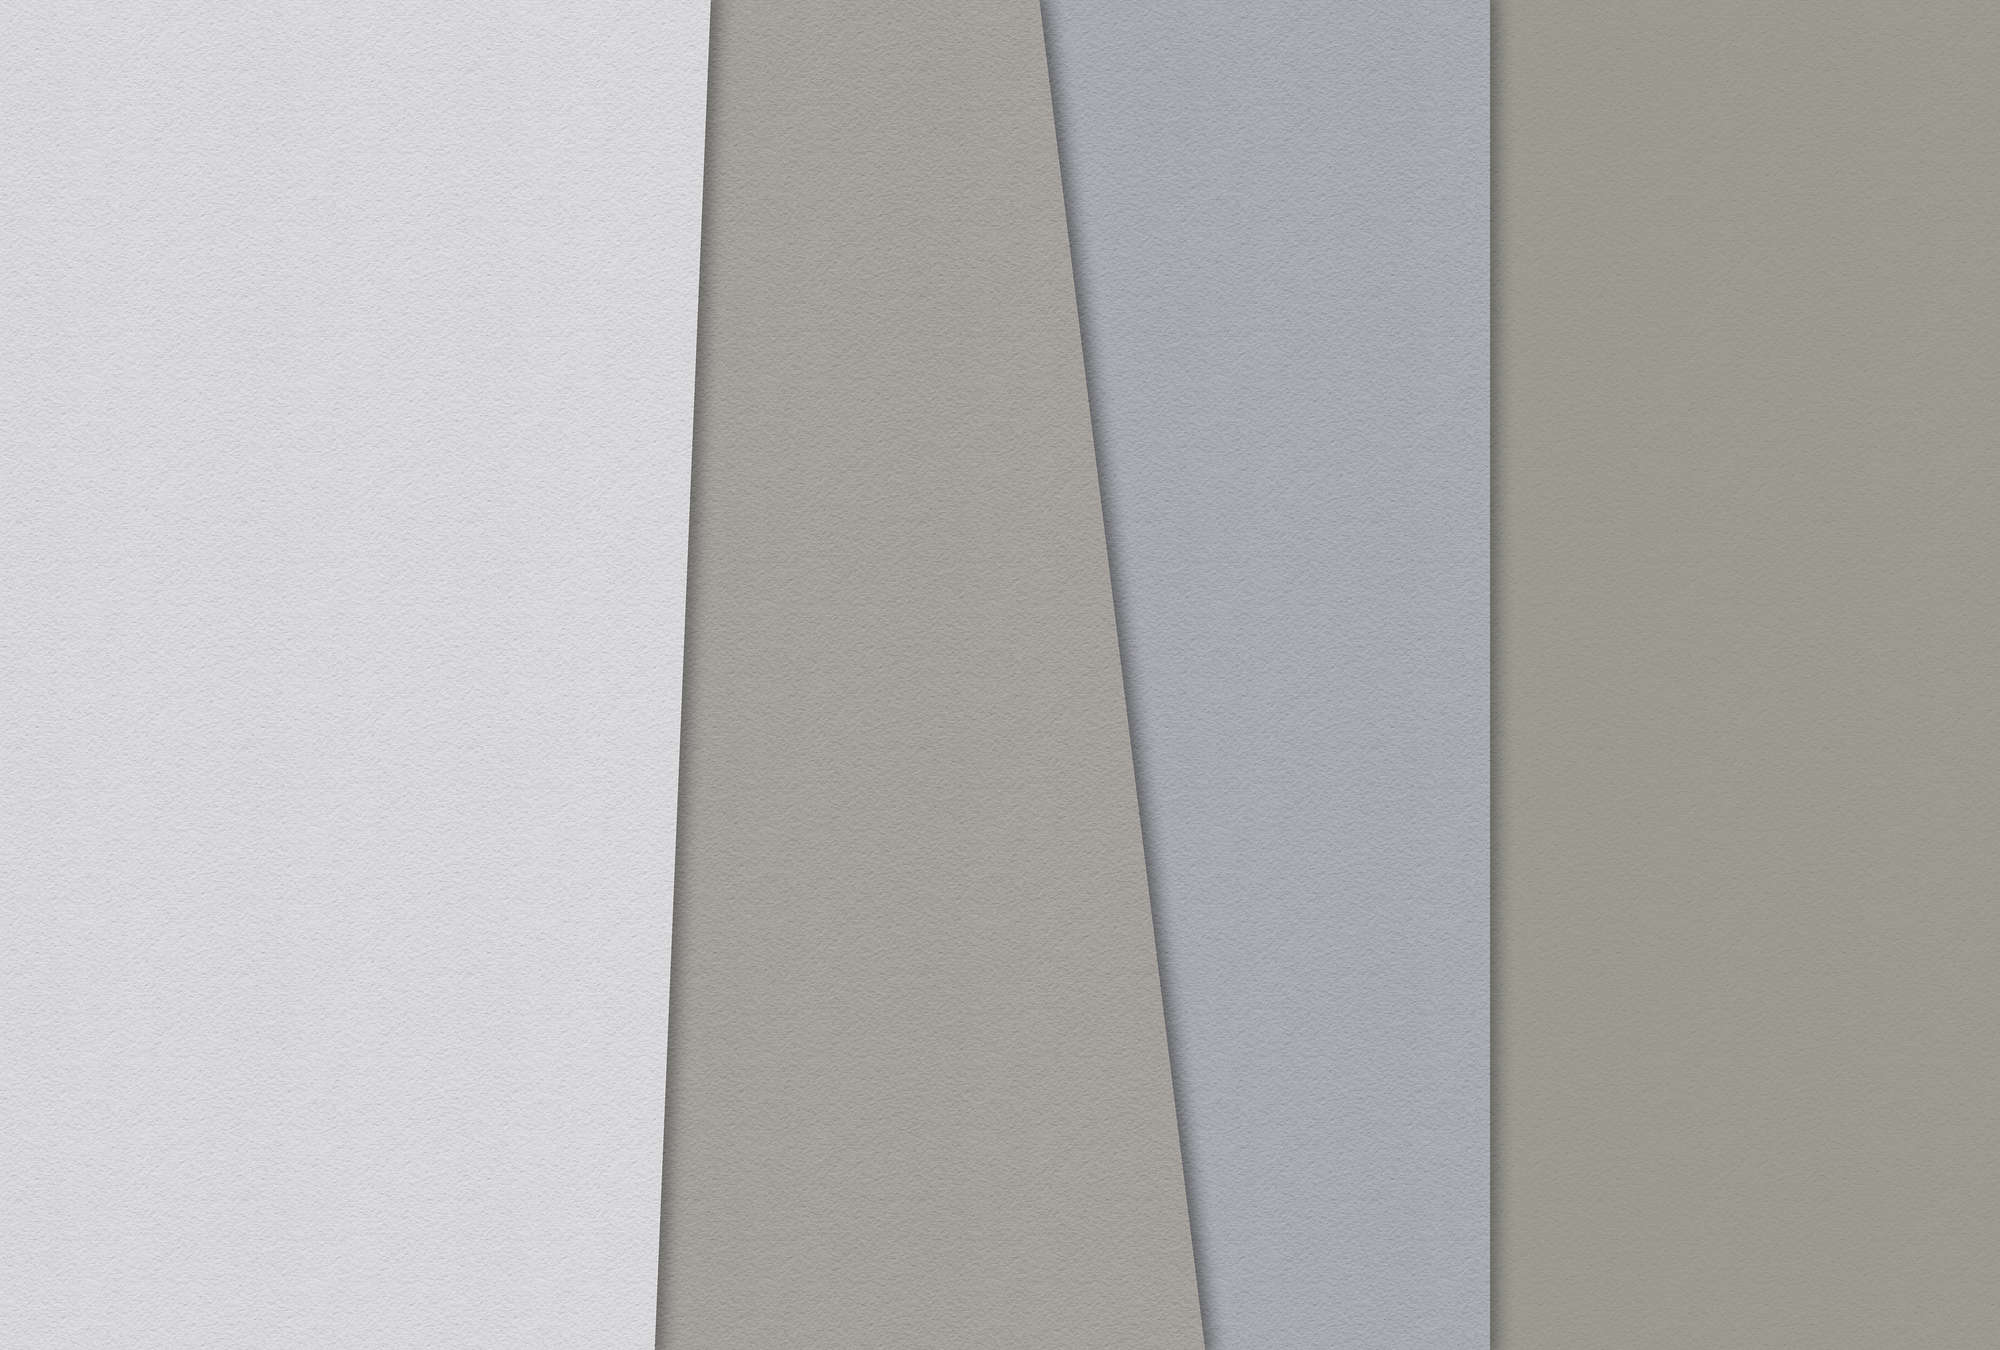             Carta stratificata 4 - Fotomurali Minimalismo in struttura di carta fatta a mano - Blu, Crema | Pile liscio perlato
        